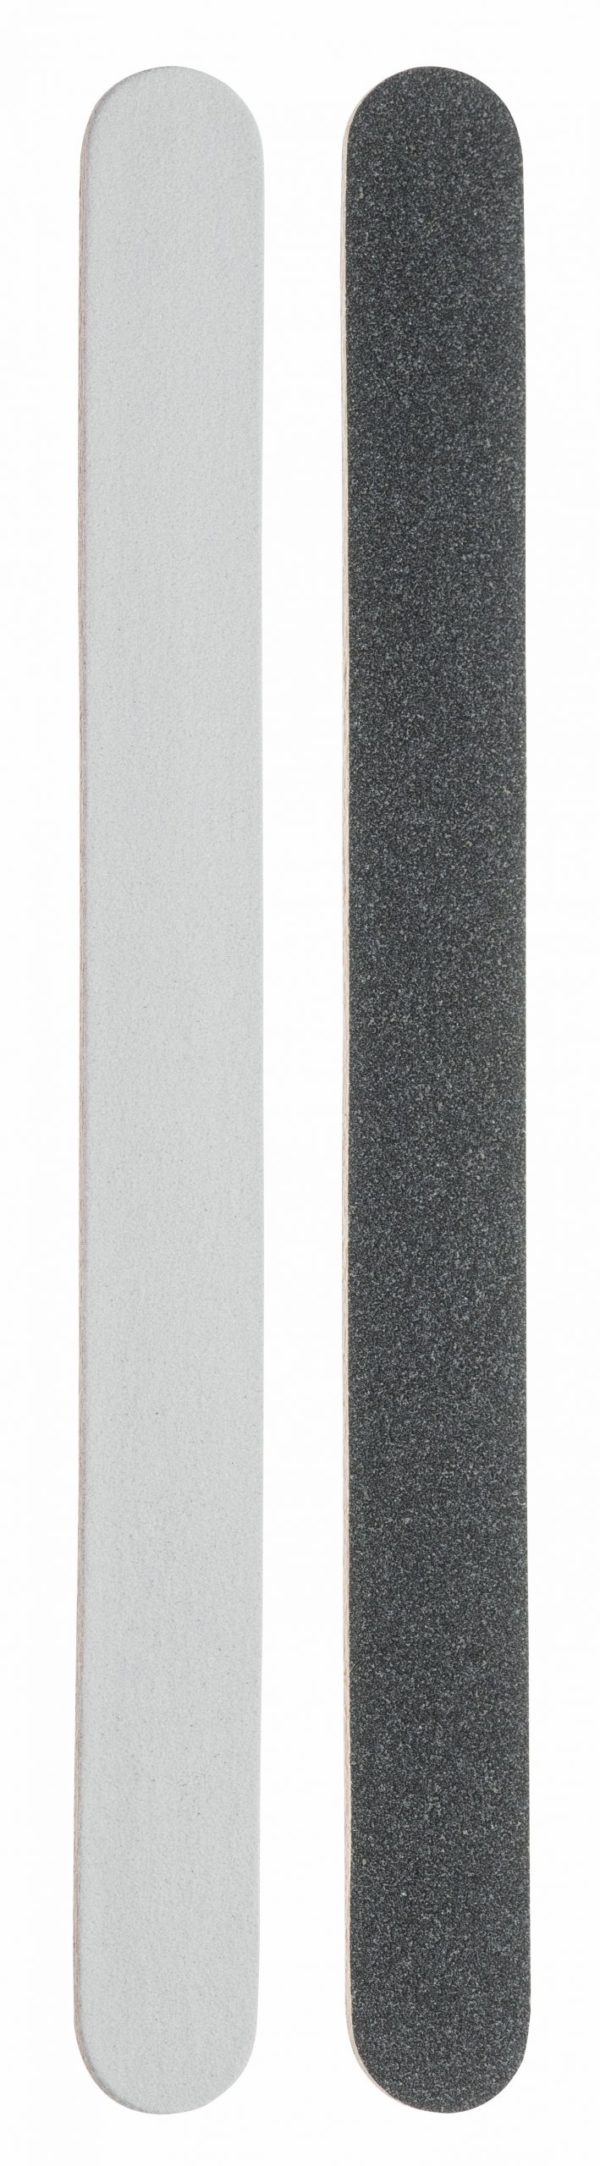 Sandblattfeile -schwarz/weiss- 5 Stück 90.504.01zum Preis von 3.61 zzgl. Versand Hersteller : Heiko Wild